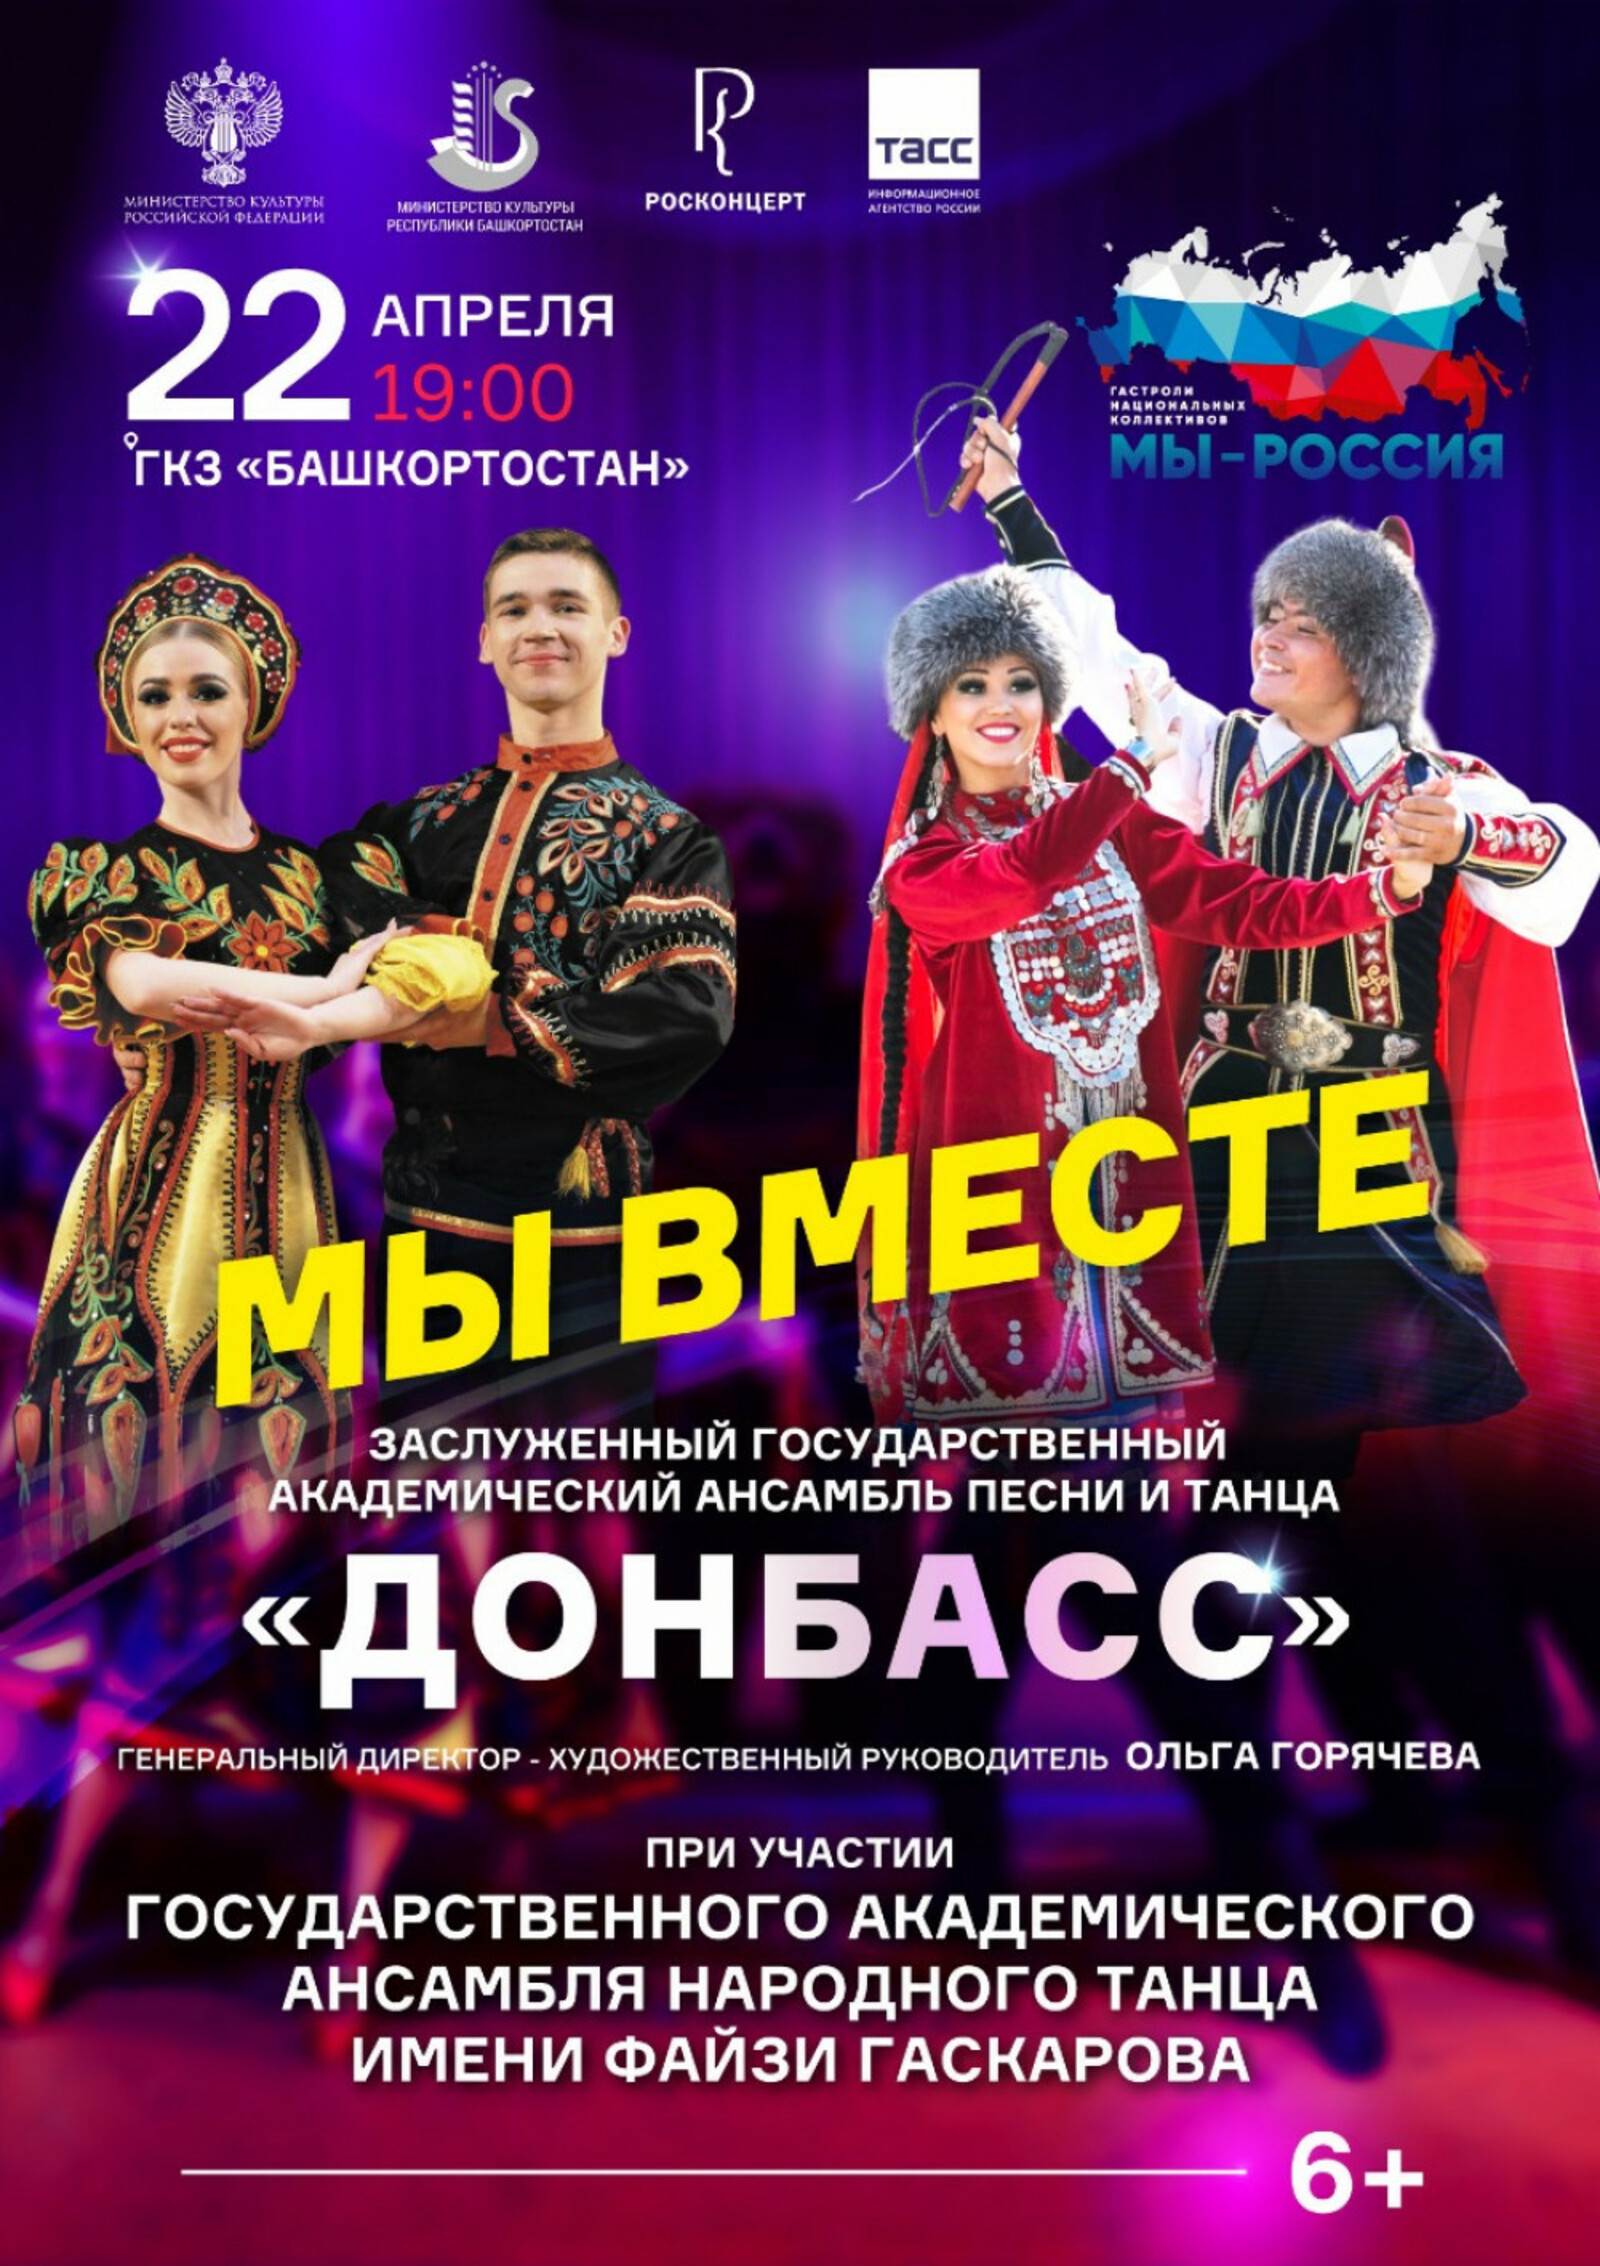 Ансамбль «Донбасс» из ДНР и «гаскаровцы» из Башкирии дадут в Уфе совместный концерт